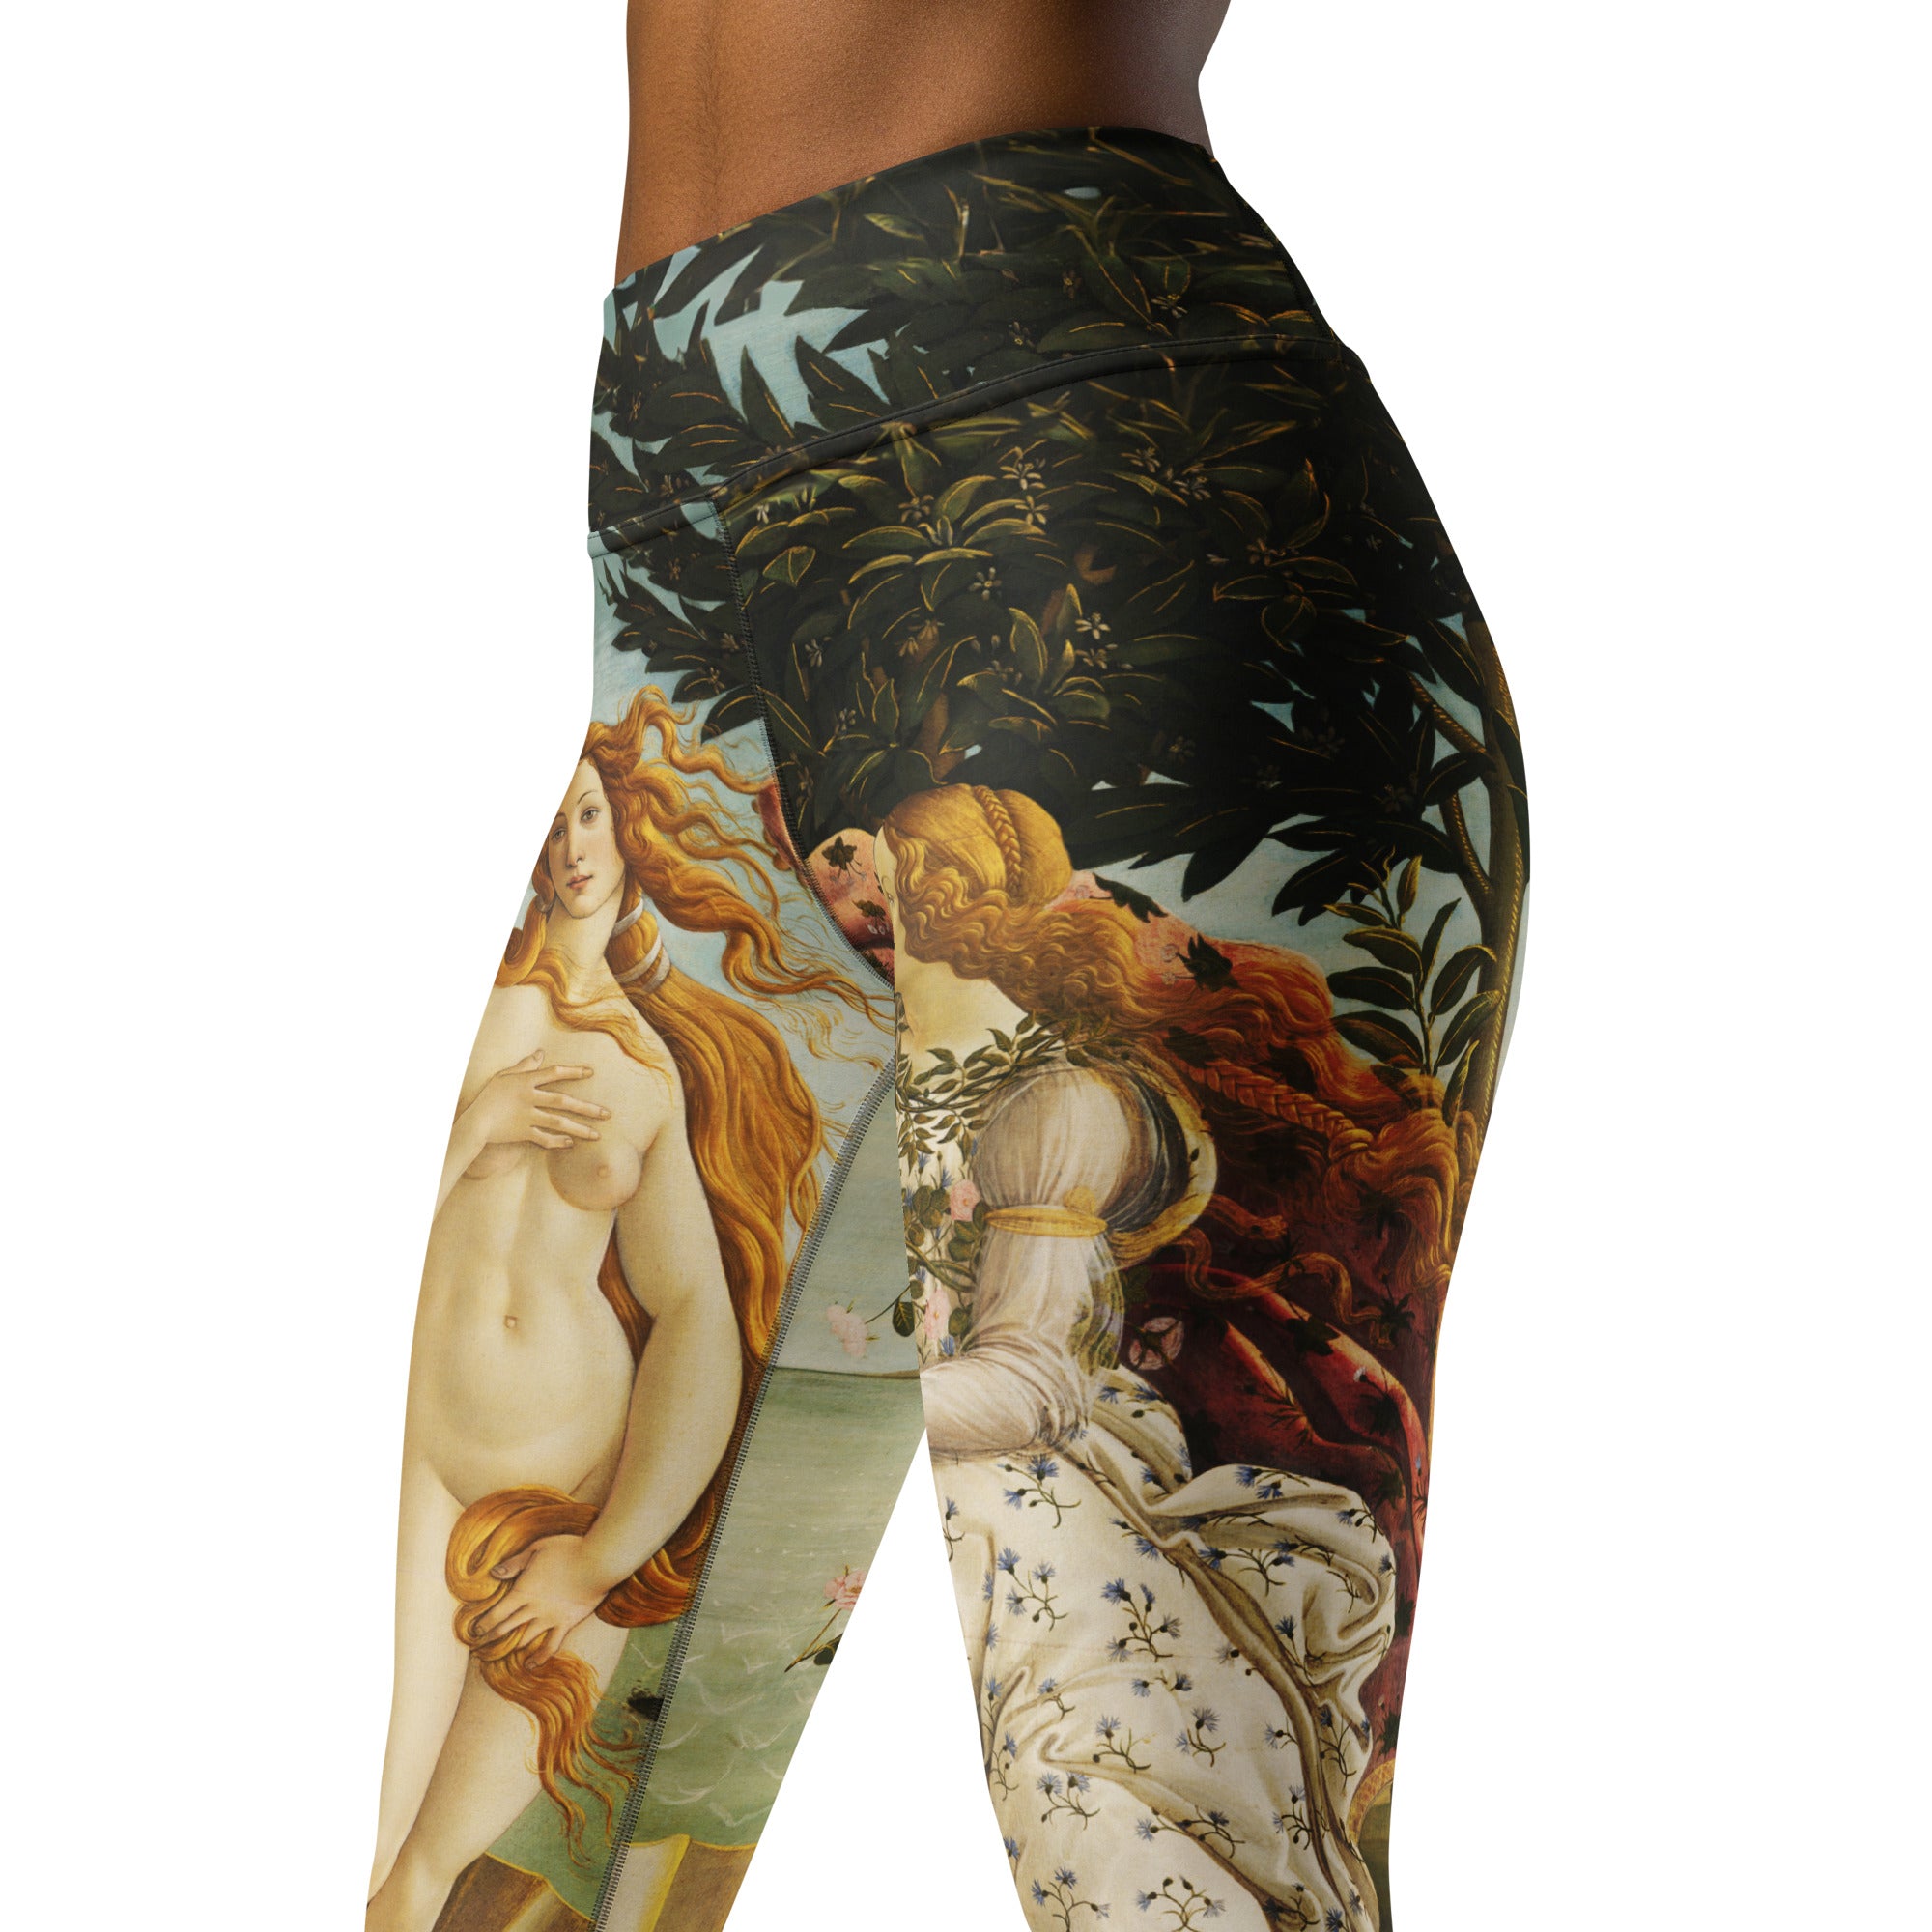 Yoga-Leggings mit berühmtem Gemälde „Die Geburt der Venus“ von Sandro Botticelli | Premium-Kunst-Yoga-Leggings